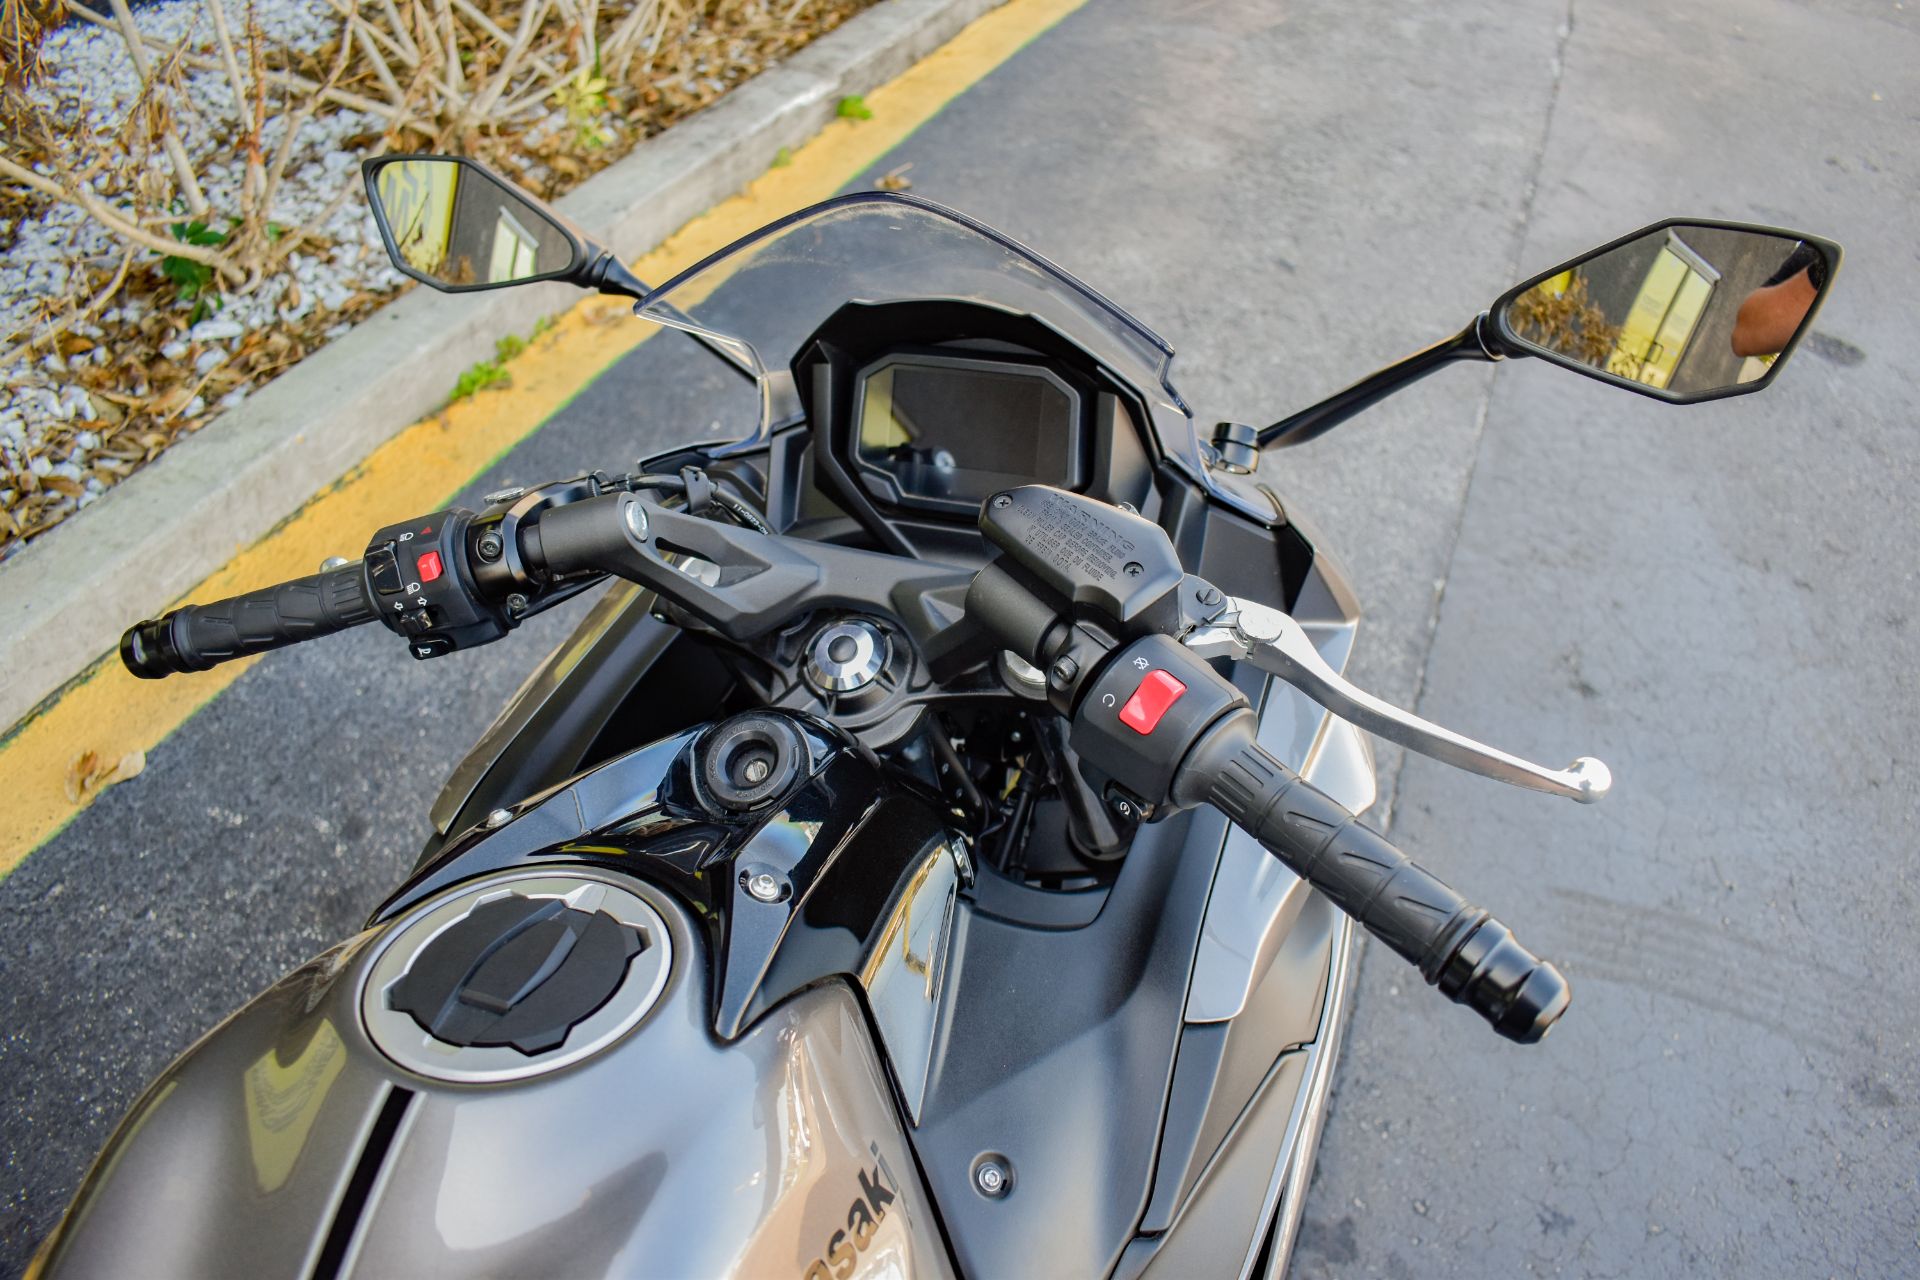 2021 Kawasaki Ninja 650 ABS in Jacksonville, Florida - Photo 10